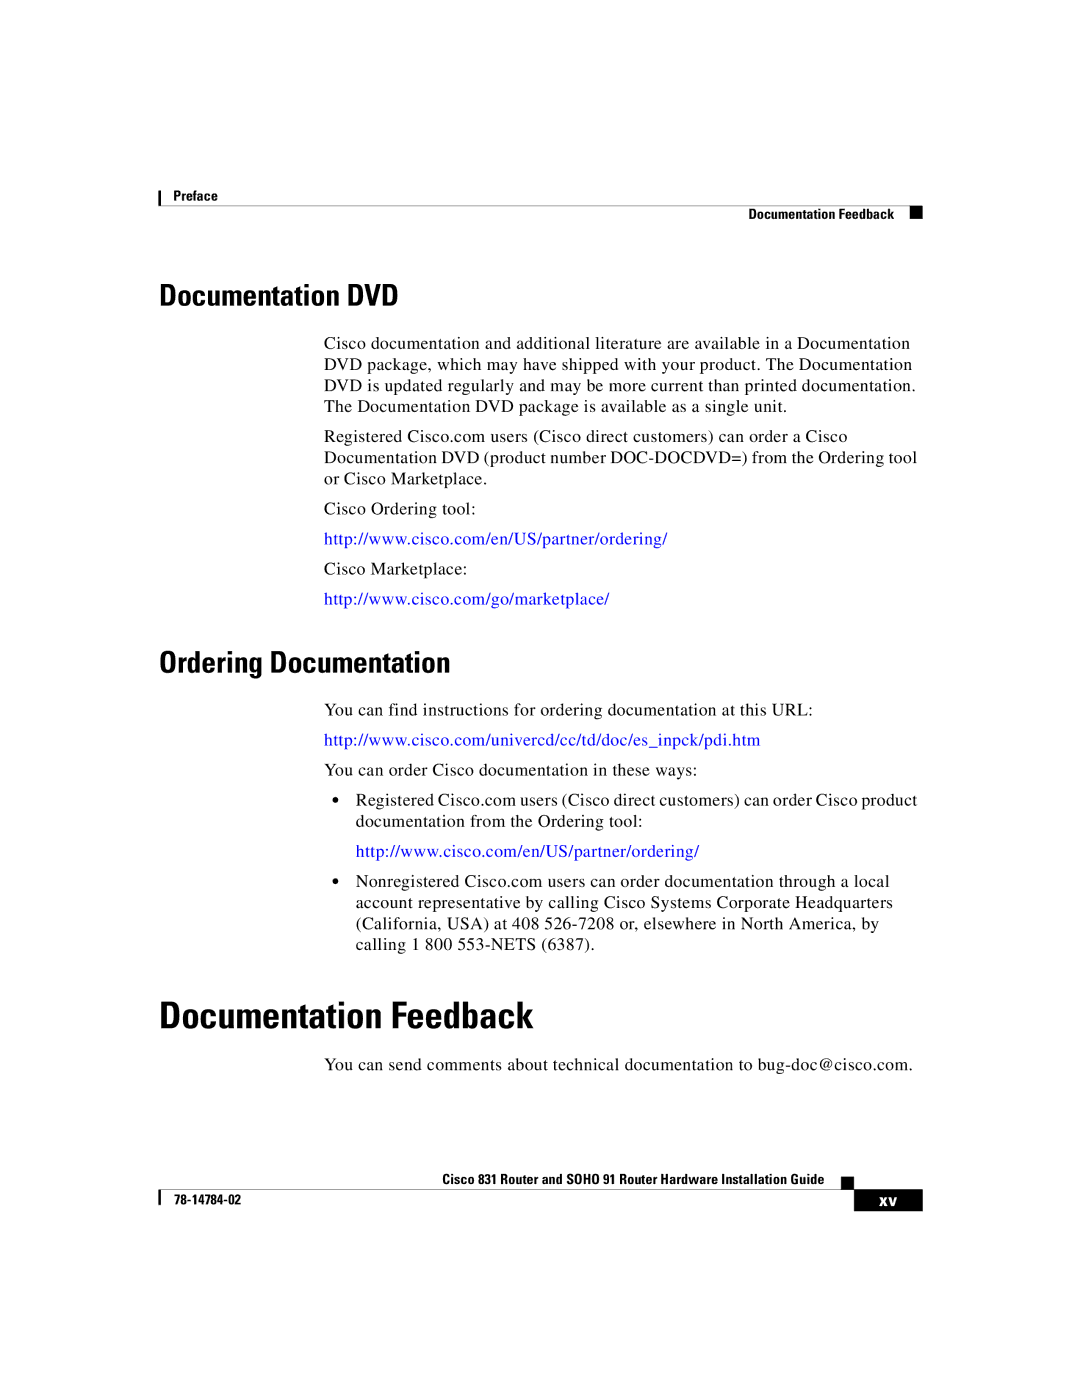 Cisco Systems Cisco 831 manual Documentation Feedback, Documentation DVD, Ordering Documentation 